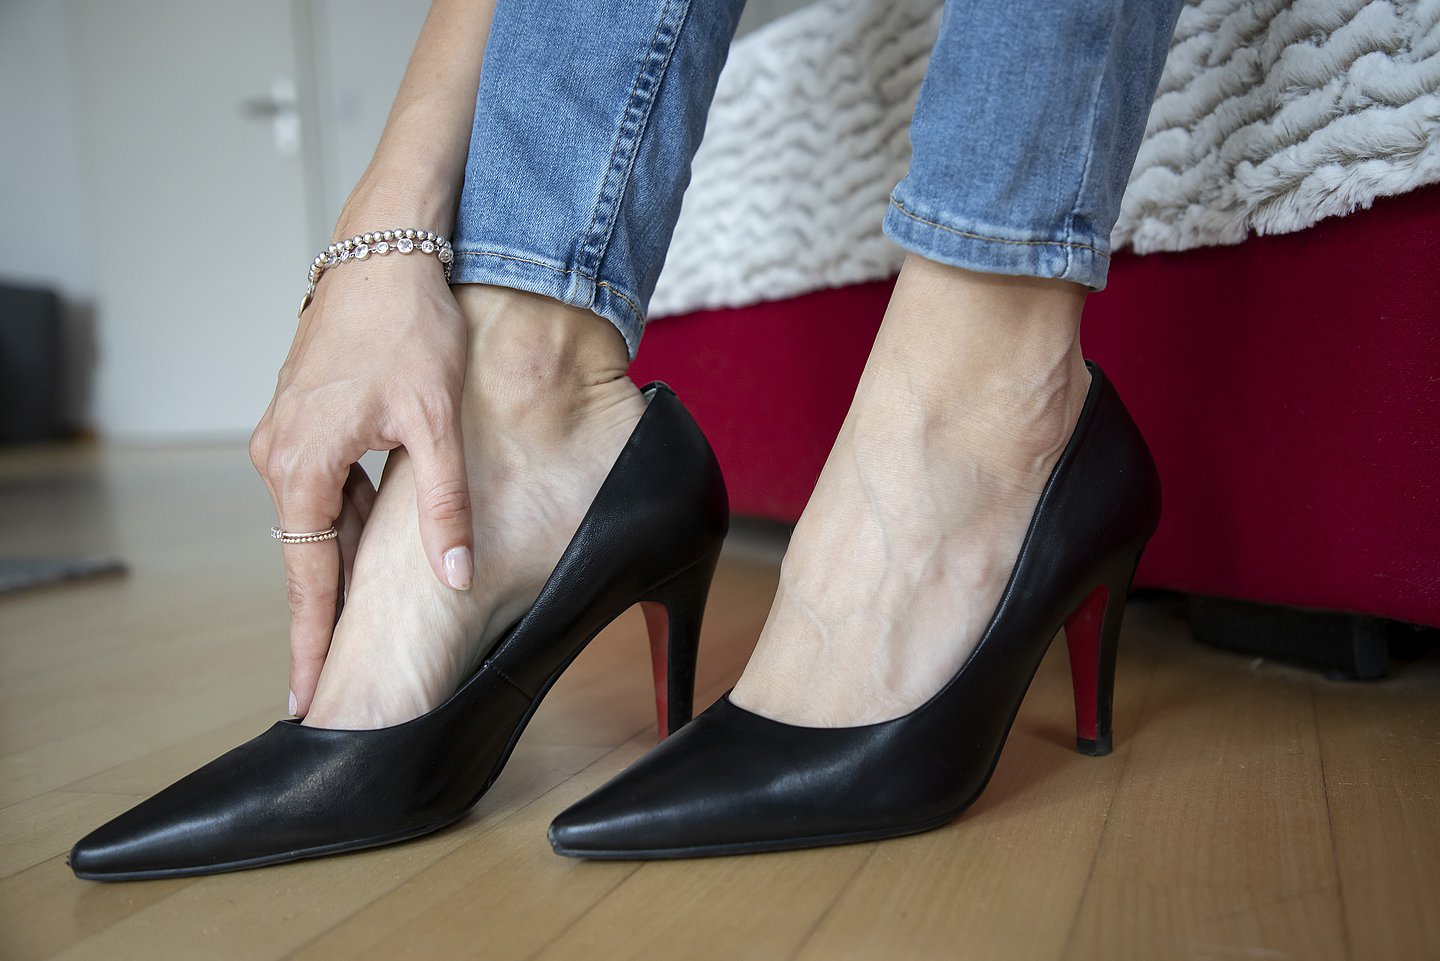 Foto: Eine Person in High Heels reibt sich ihren Fuß.